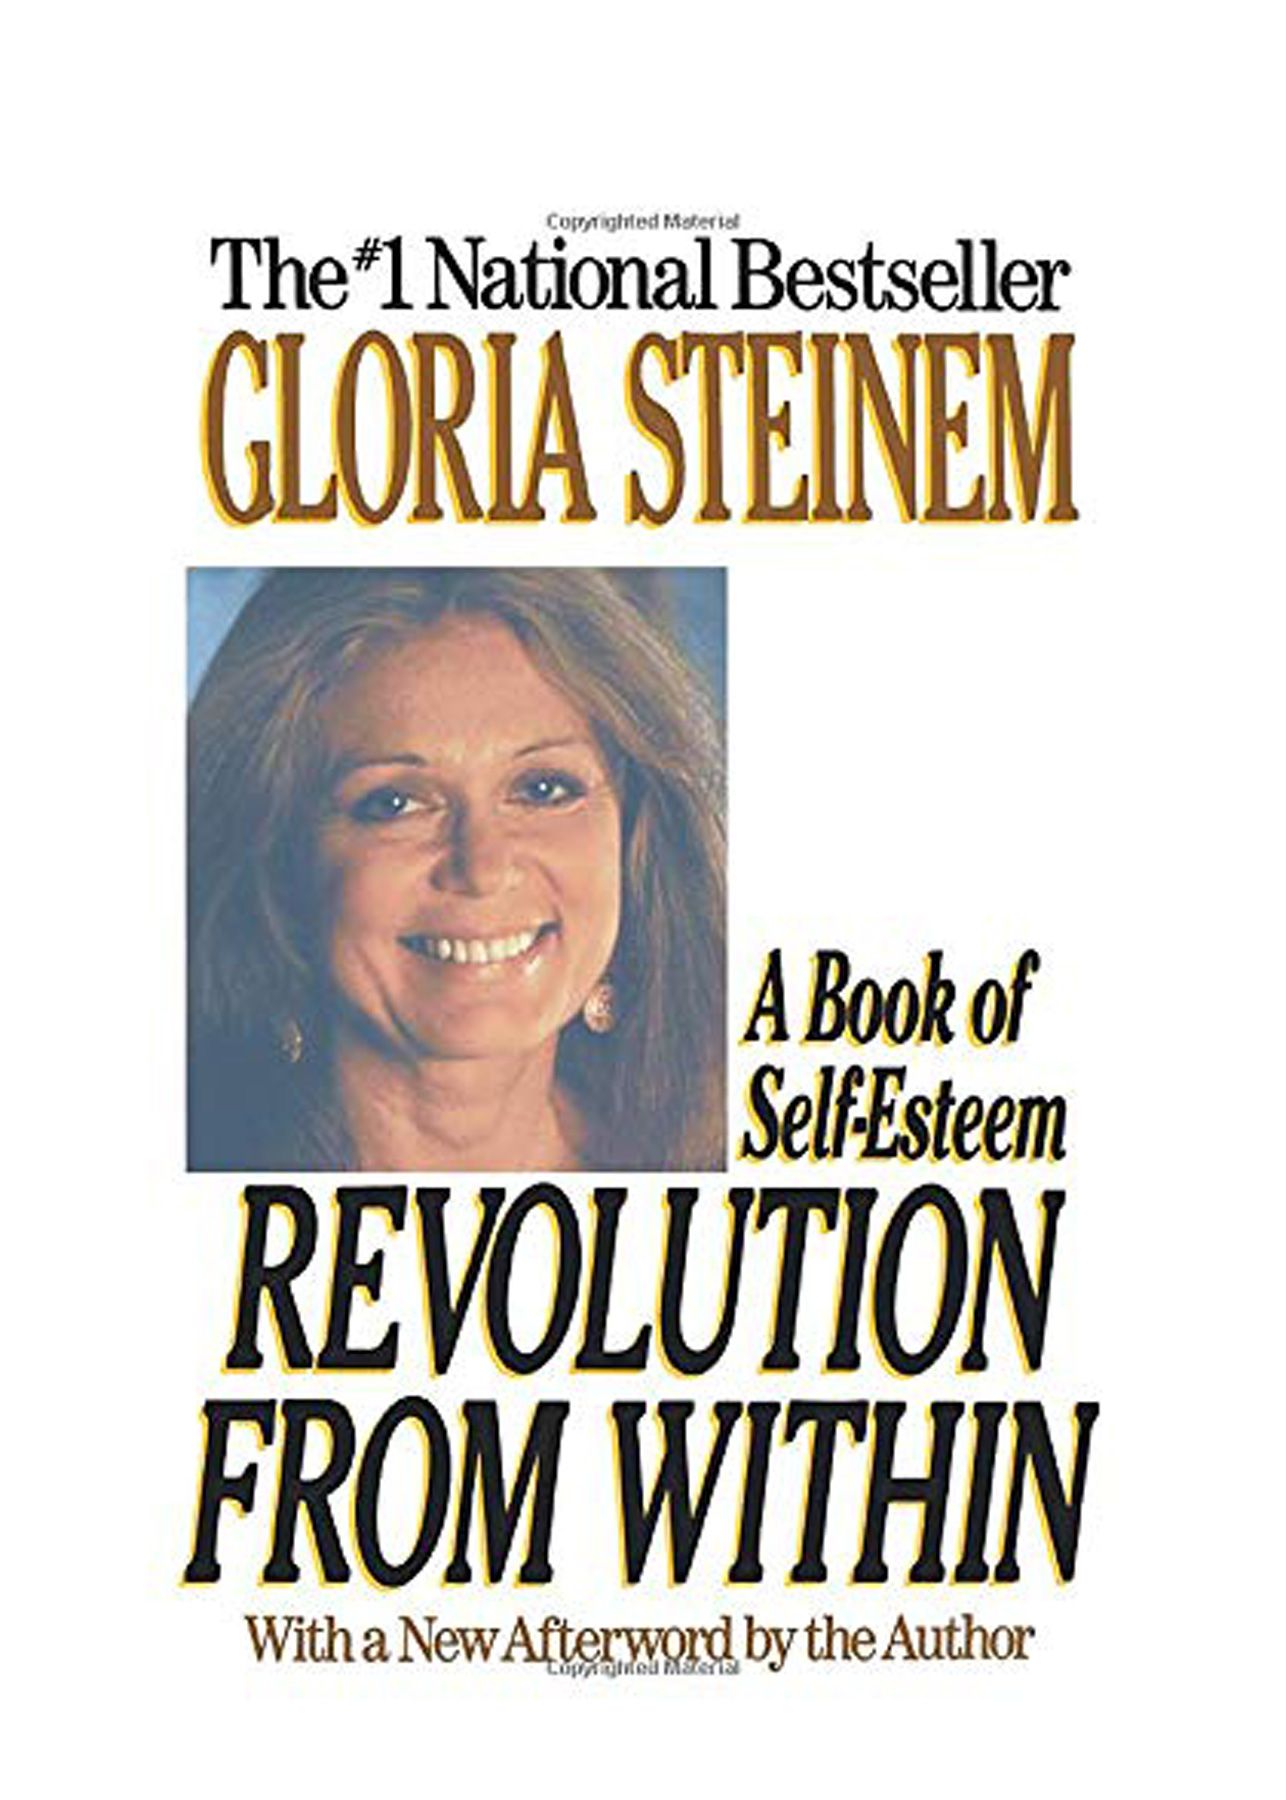 Gode ​​bøger at læse i 20'erne: 'Revolution indefra' af Gloria Steinem